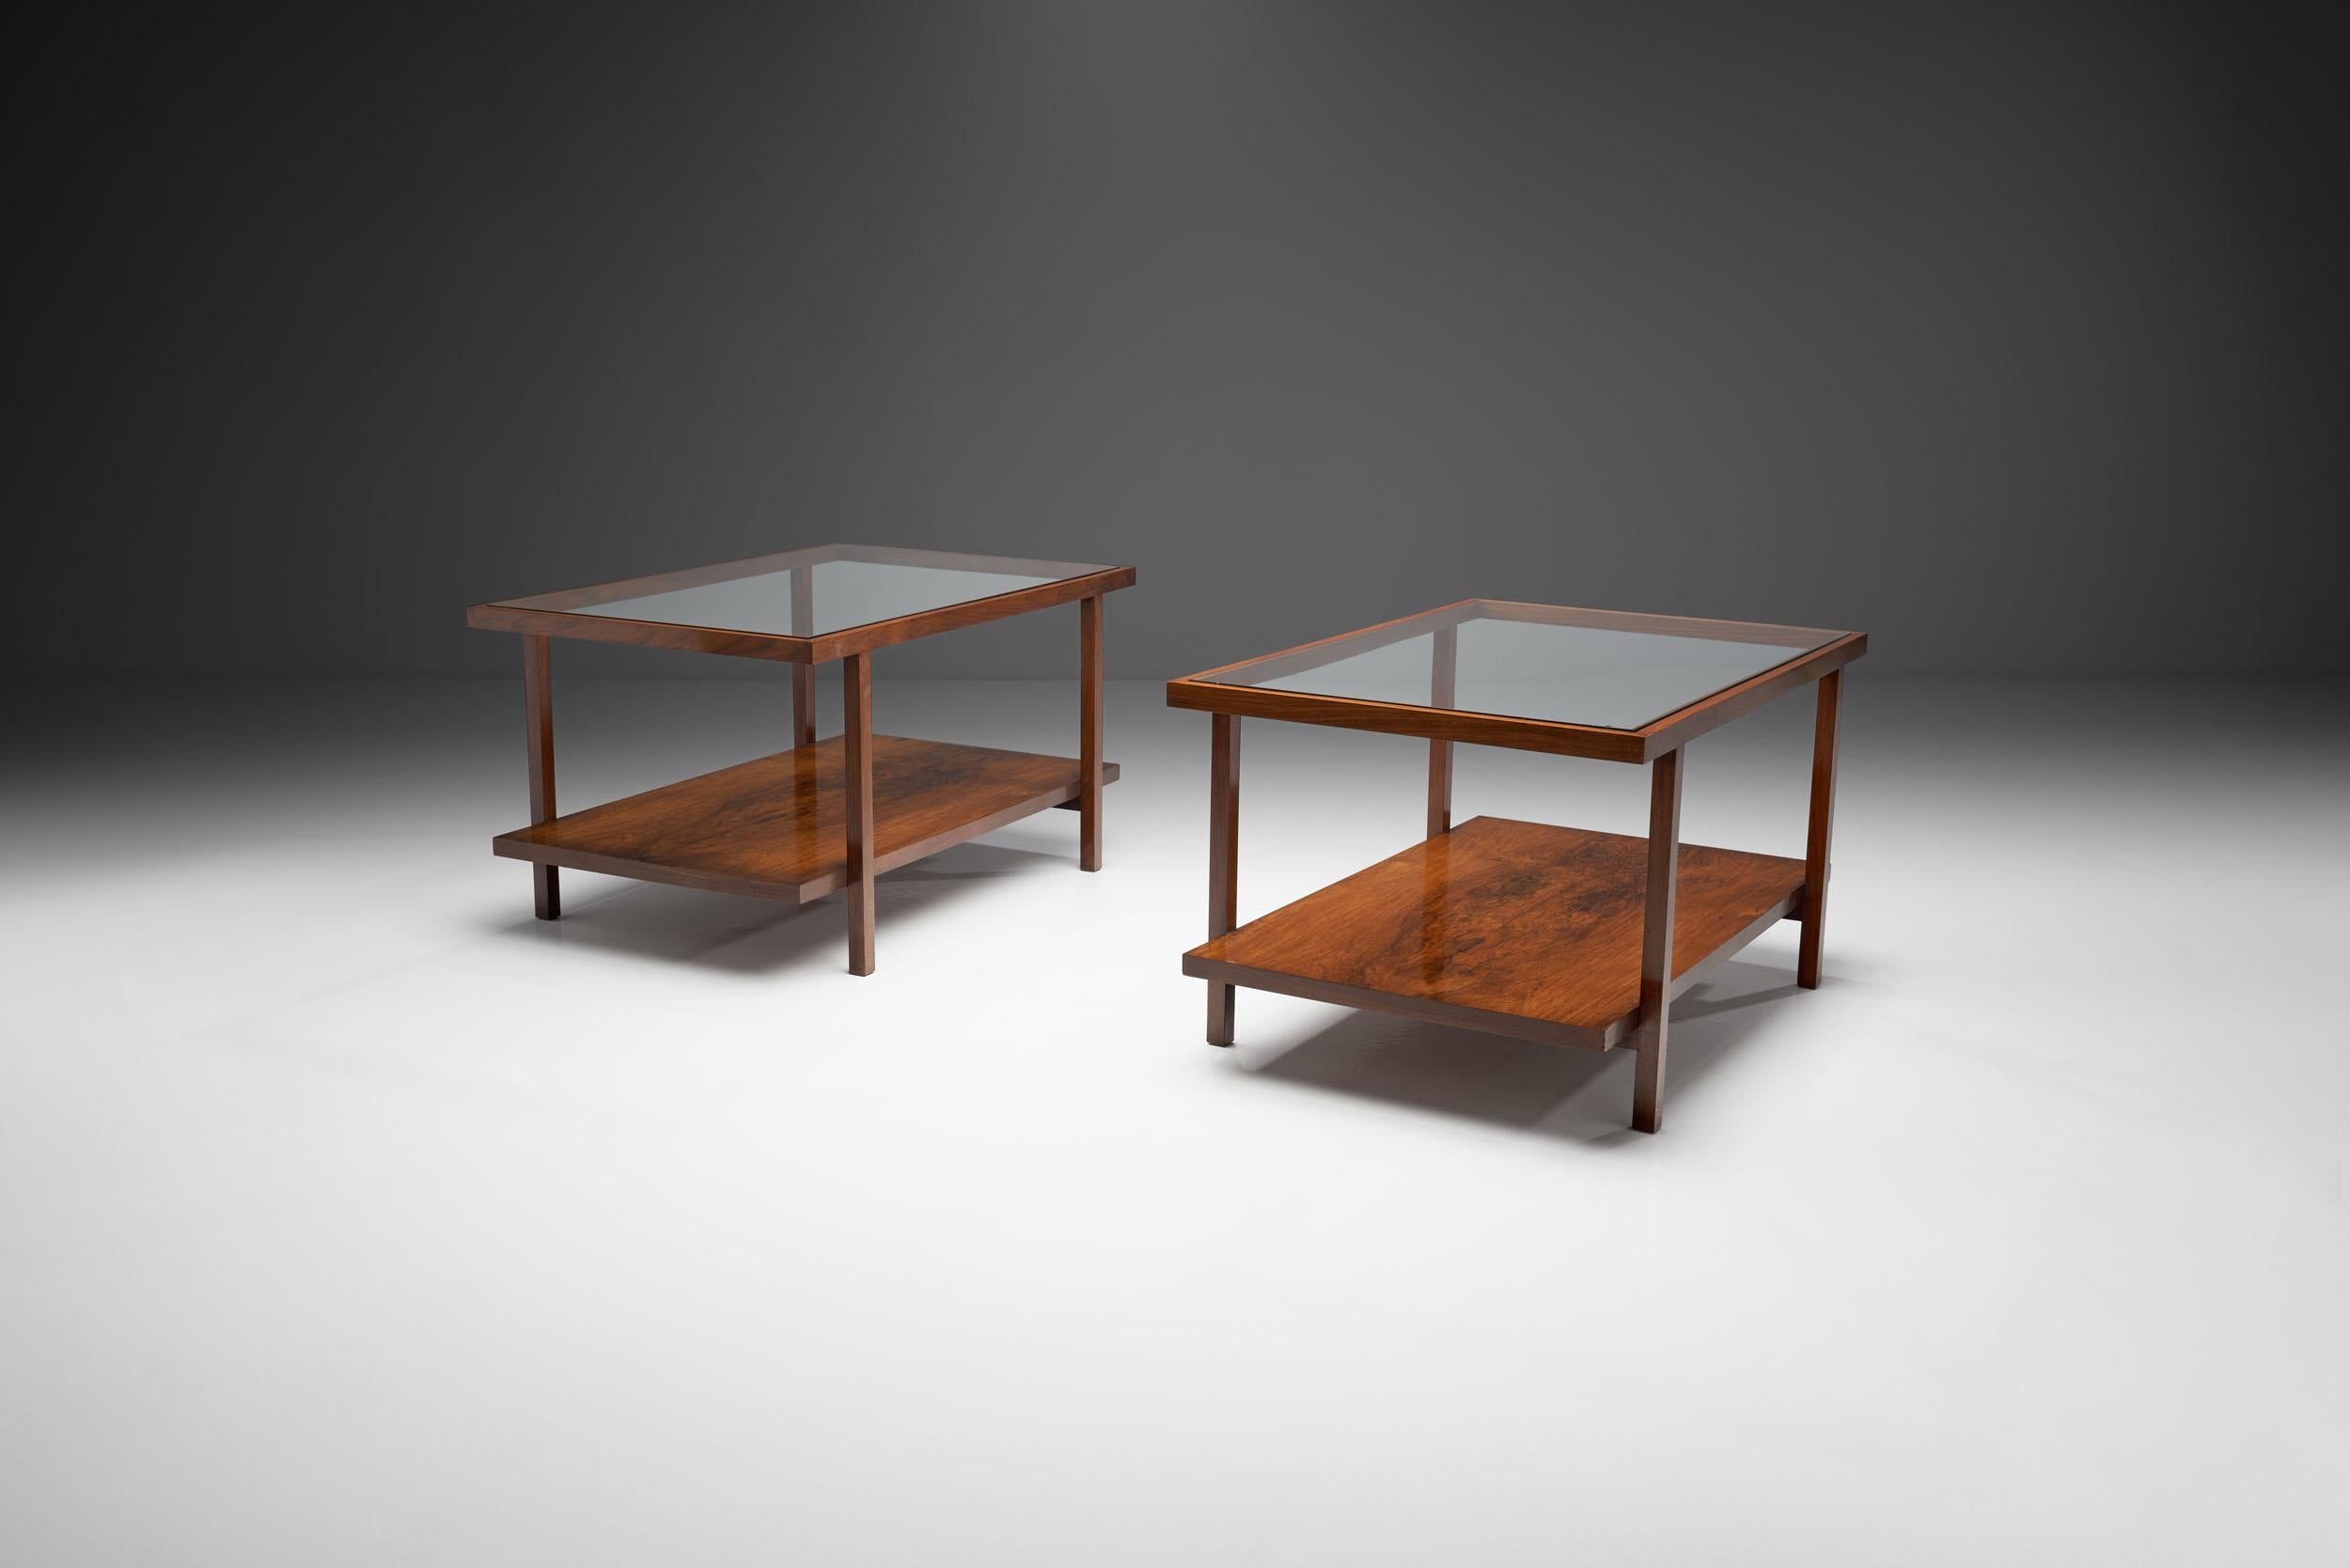 Conçues de manière rationnelle et géométrique, cette paire de tables basses Branco et Preto, fabriquées à la main, ont un aspect ouvert et élégant. 

Les deux tables sont fabriquées dans une combinaison de bois de caviuna massif et plaqué, avec un